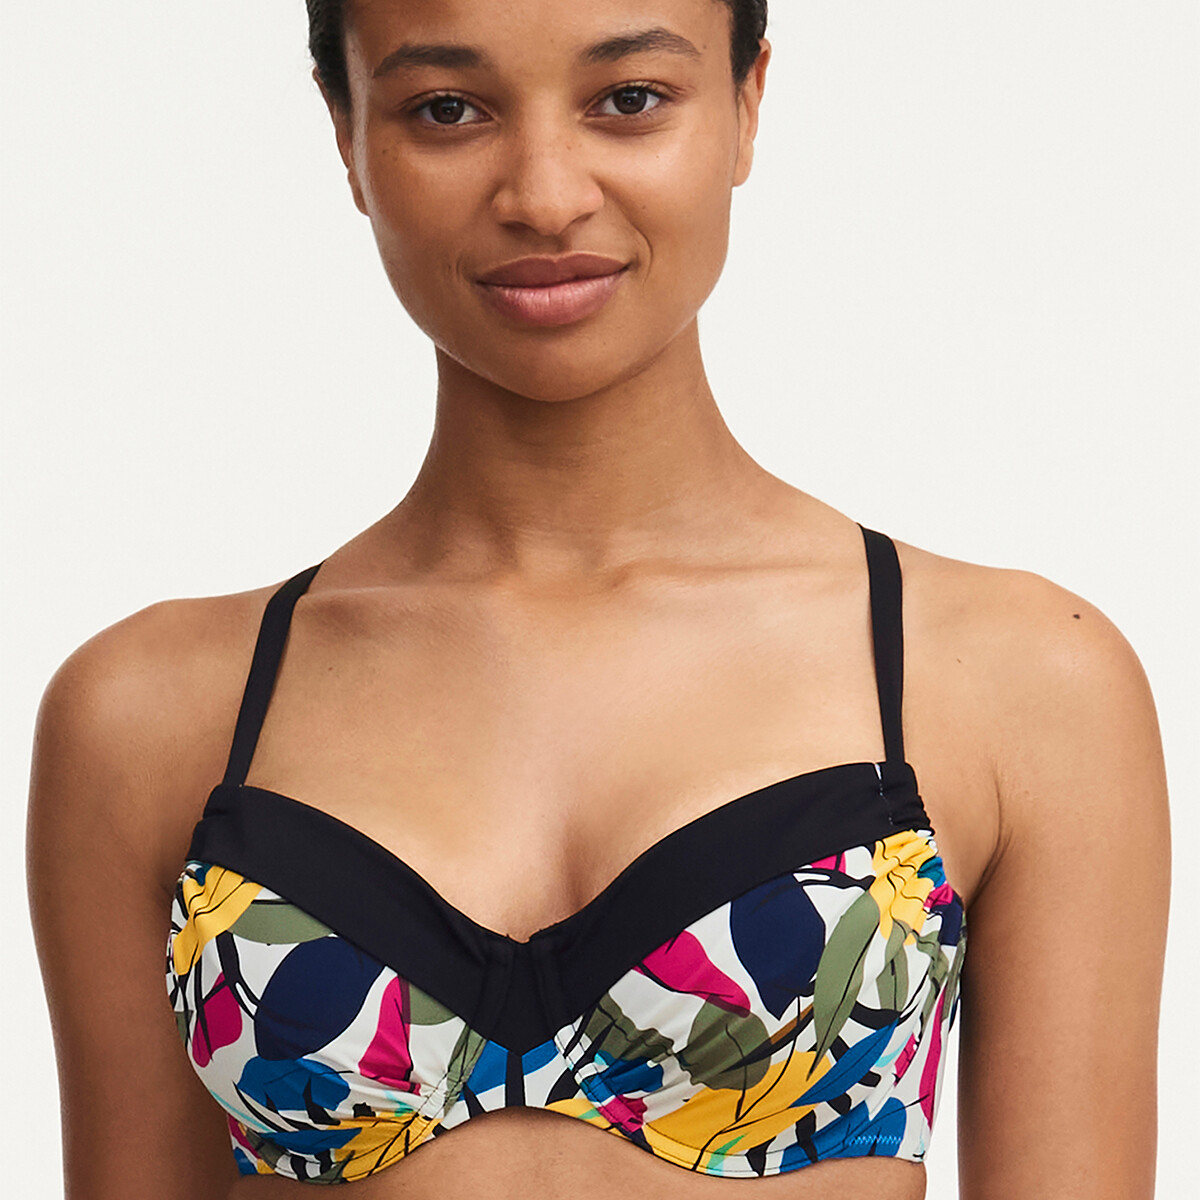 Femilet Honduras Bikini Top, Farve: Multicolor Leaves, Størrelse: 90D, Dame